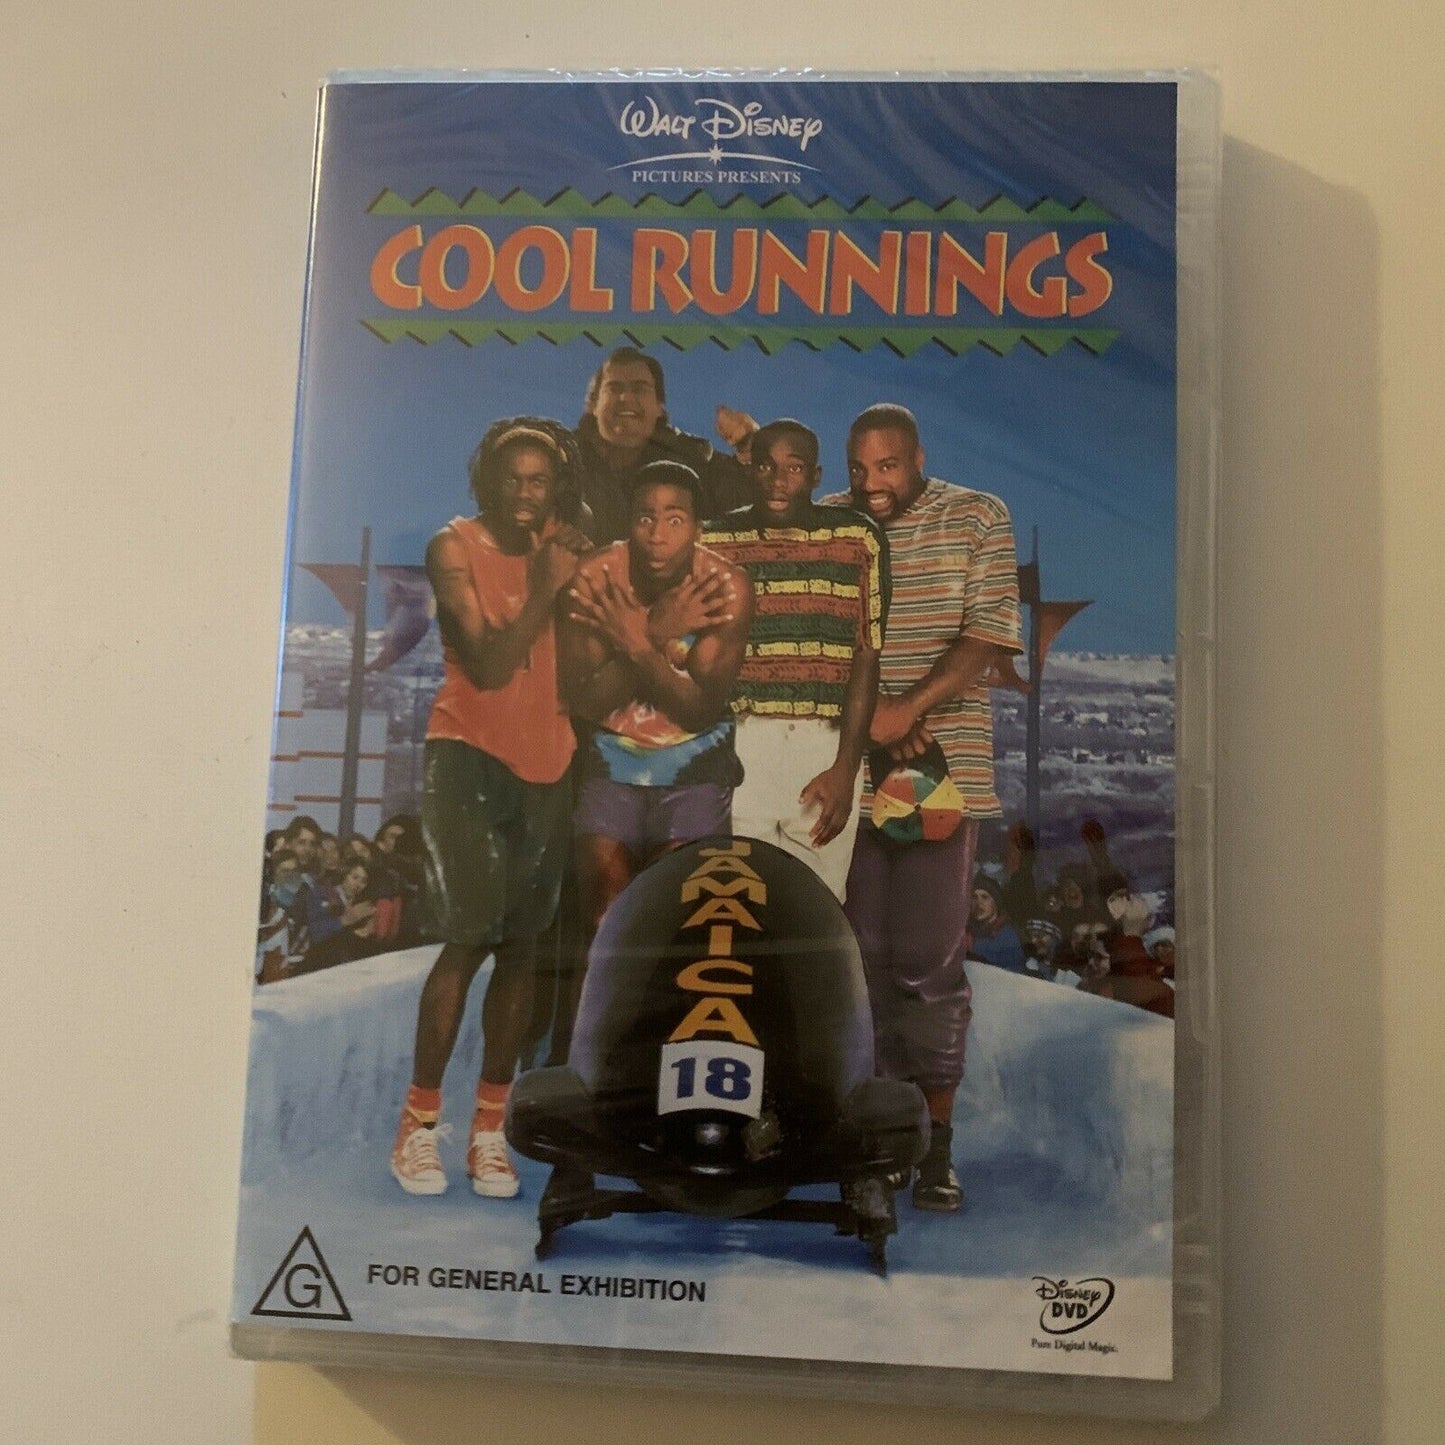 *New Sealed* Cool Runnings (DVD, 1993)  John Candy, Doug E. Doug. Region 4